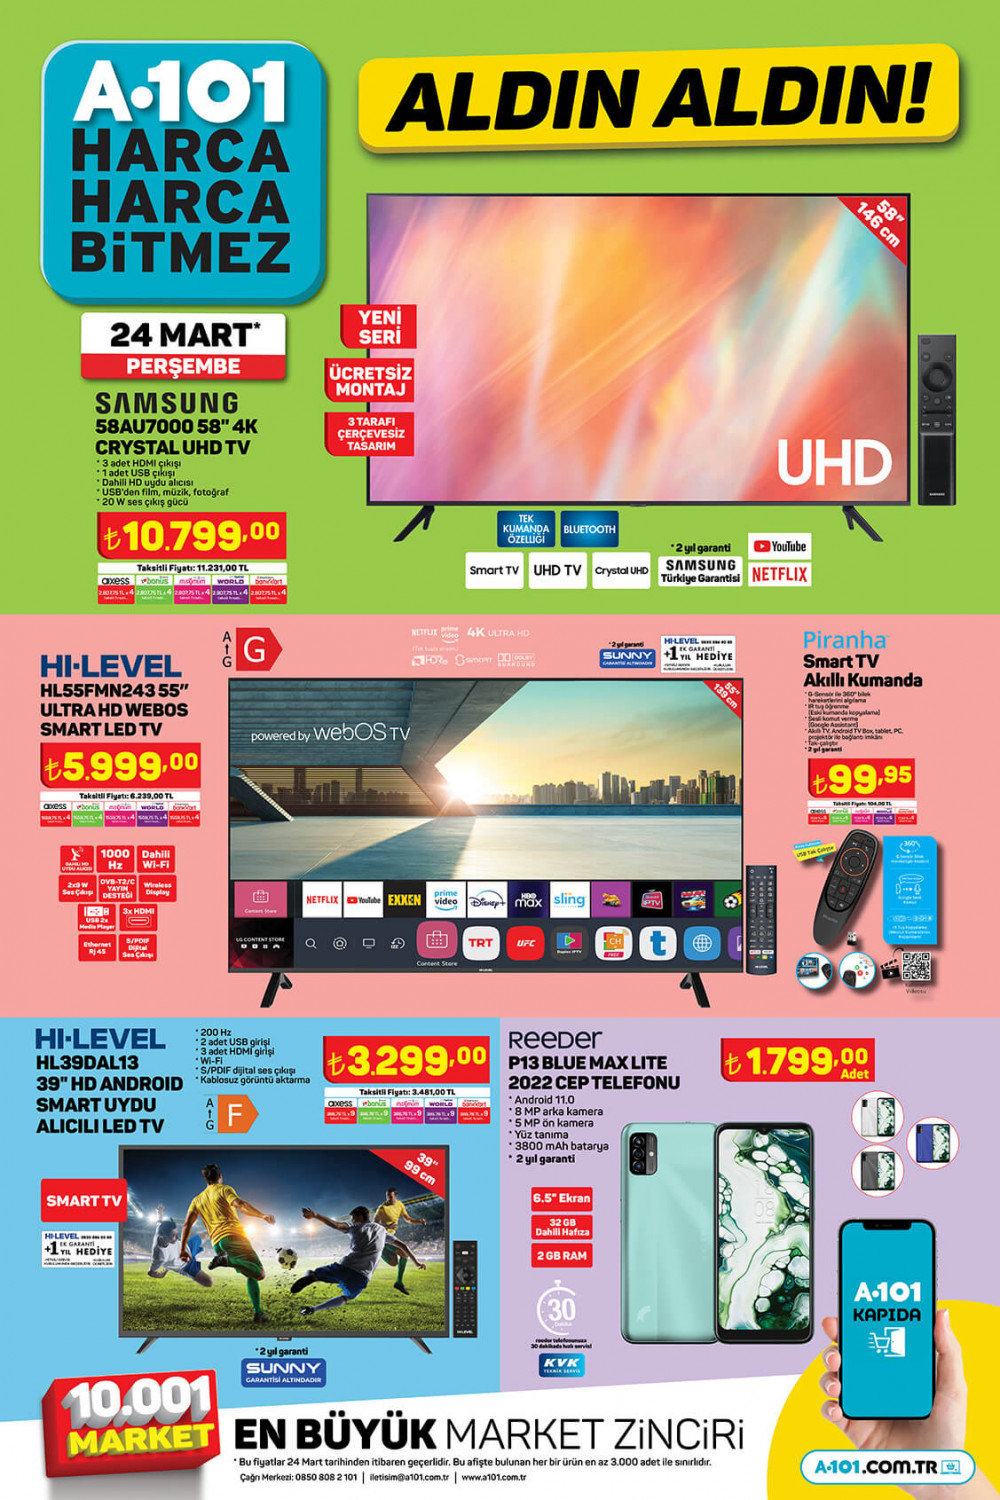 SON DAKİKA 24 MART 2022  A101 İNDİRİMLİ TEKNOLOJİK ÜRÜNLER KATALOĞU: A101 Samsung Smart TV, SEG NF 483 No-Frost Buzdolabı, Pıranha Akıllı Saat Fiyatları - Resim: 1